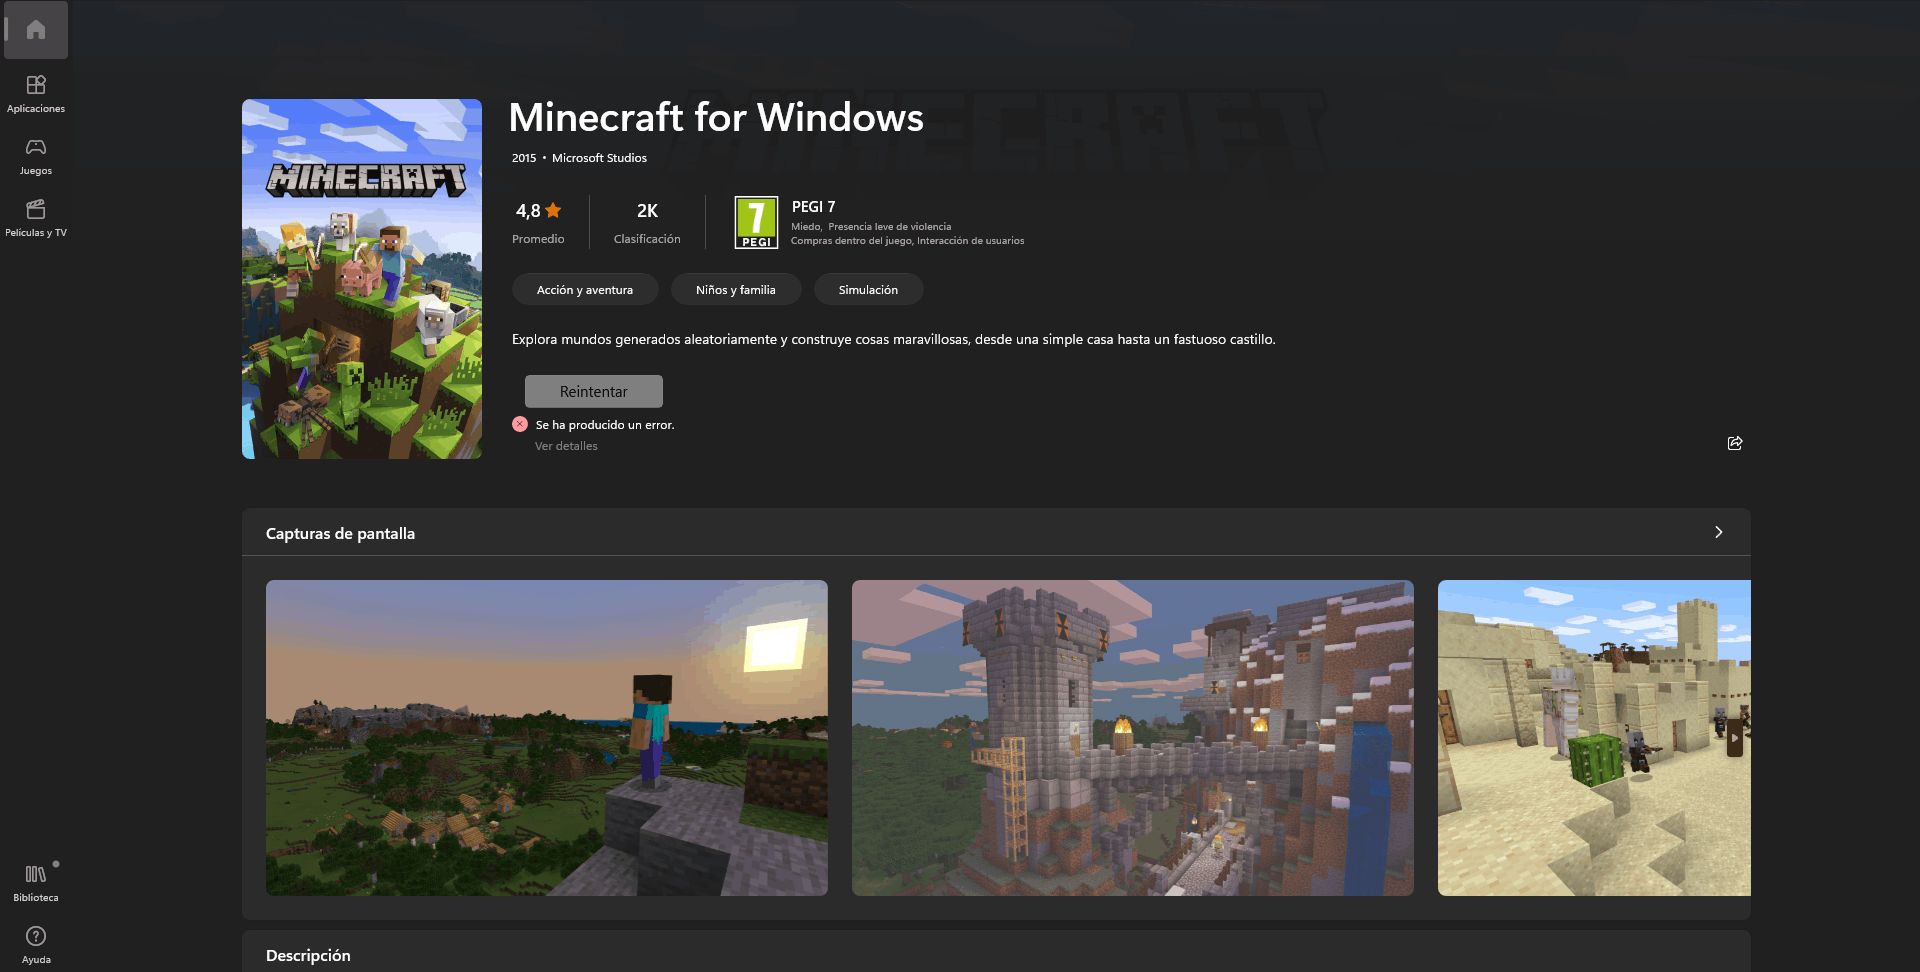 Erro na instalação do Minecraft para Windows 10 e 11. - Microsoft